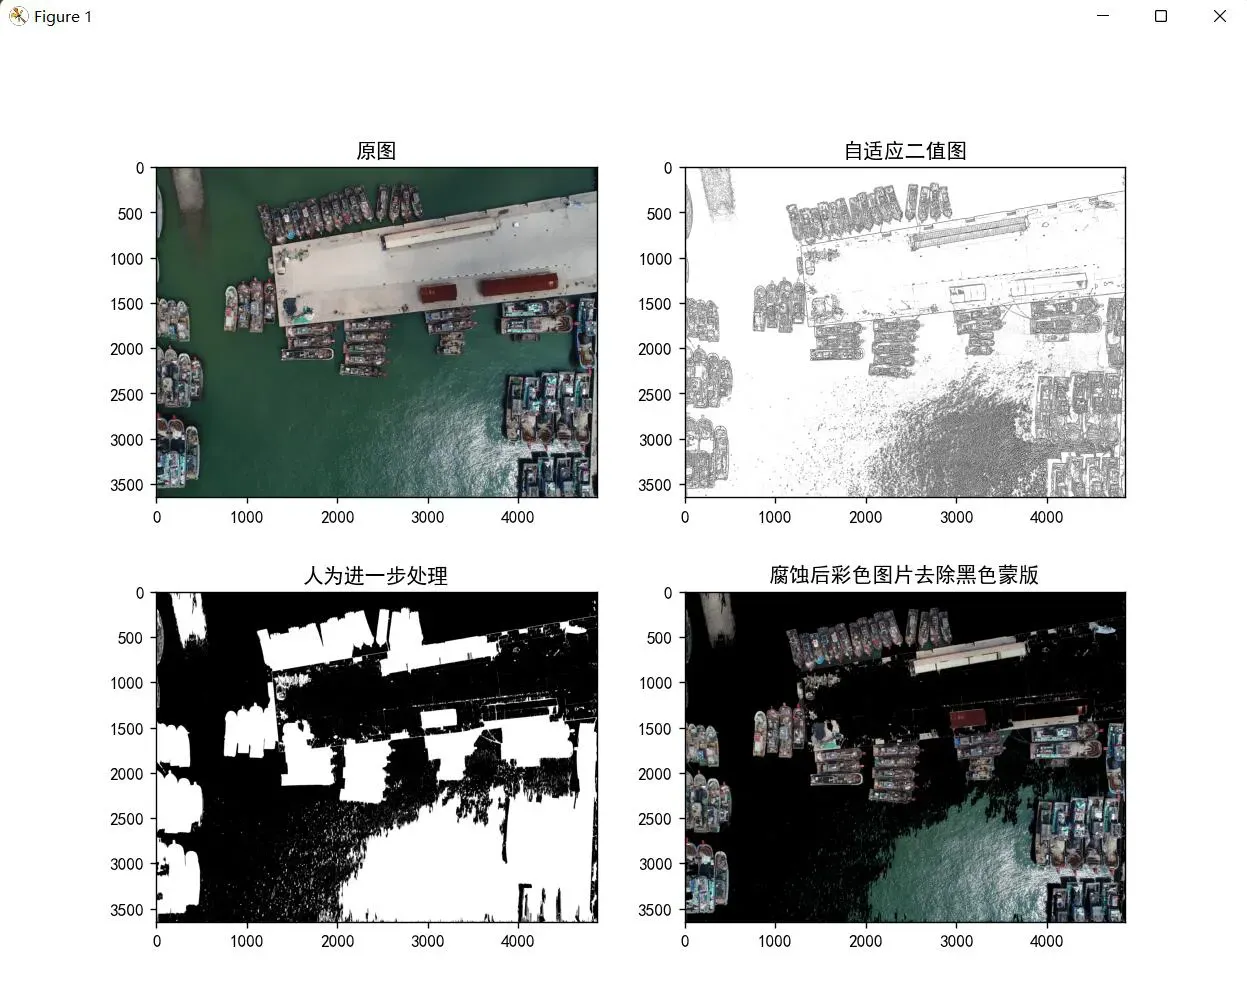 [图像处理]14.分割算法比较 OTSU算法+自适应阈值算法+分水岭